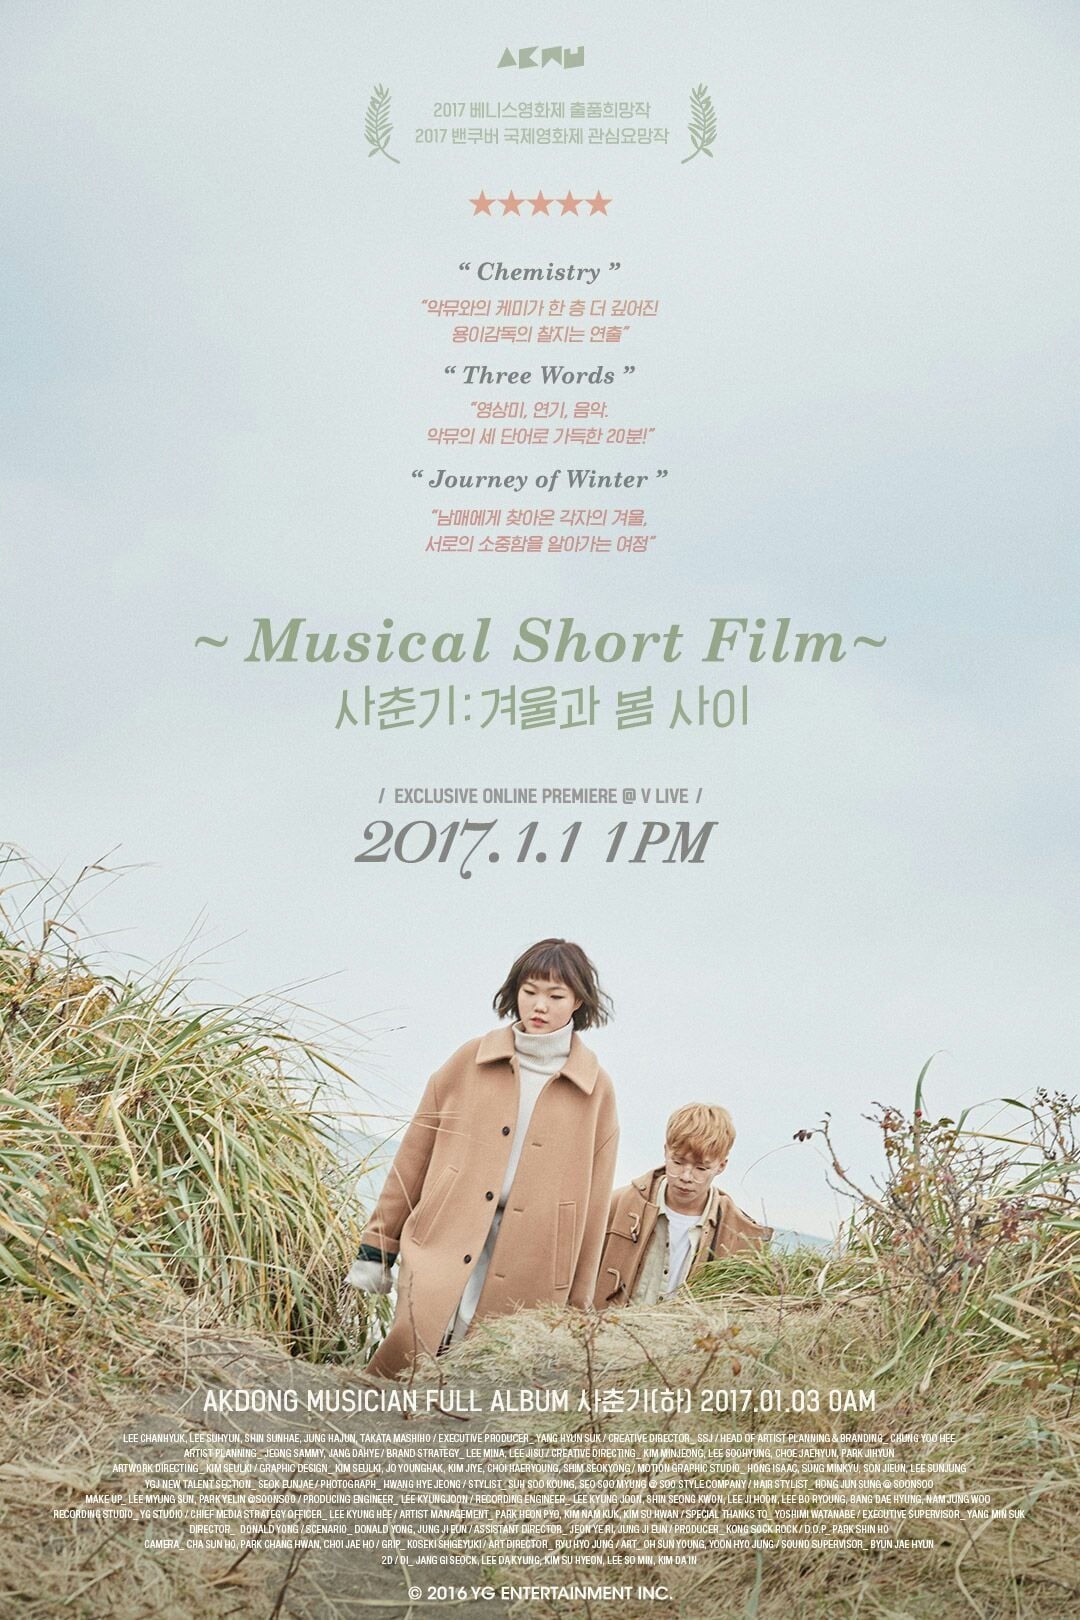 Akdong Musician's Musical Short Film